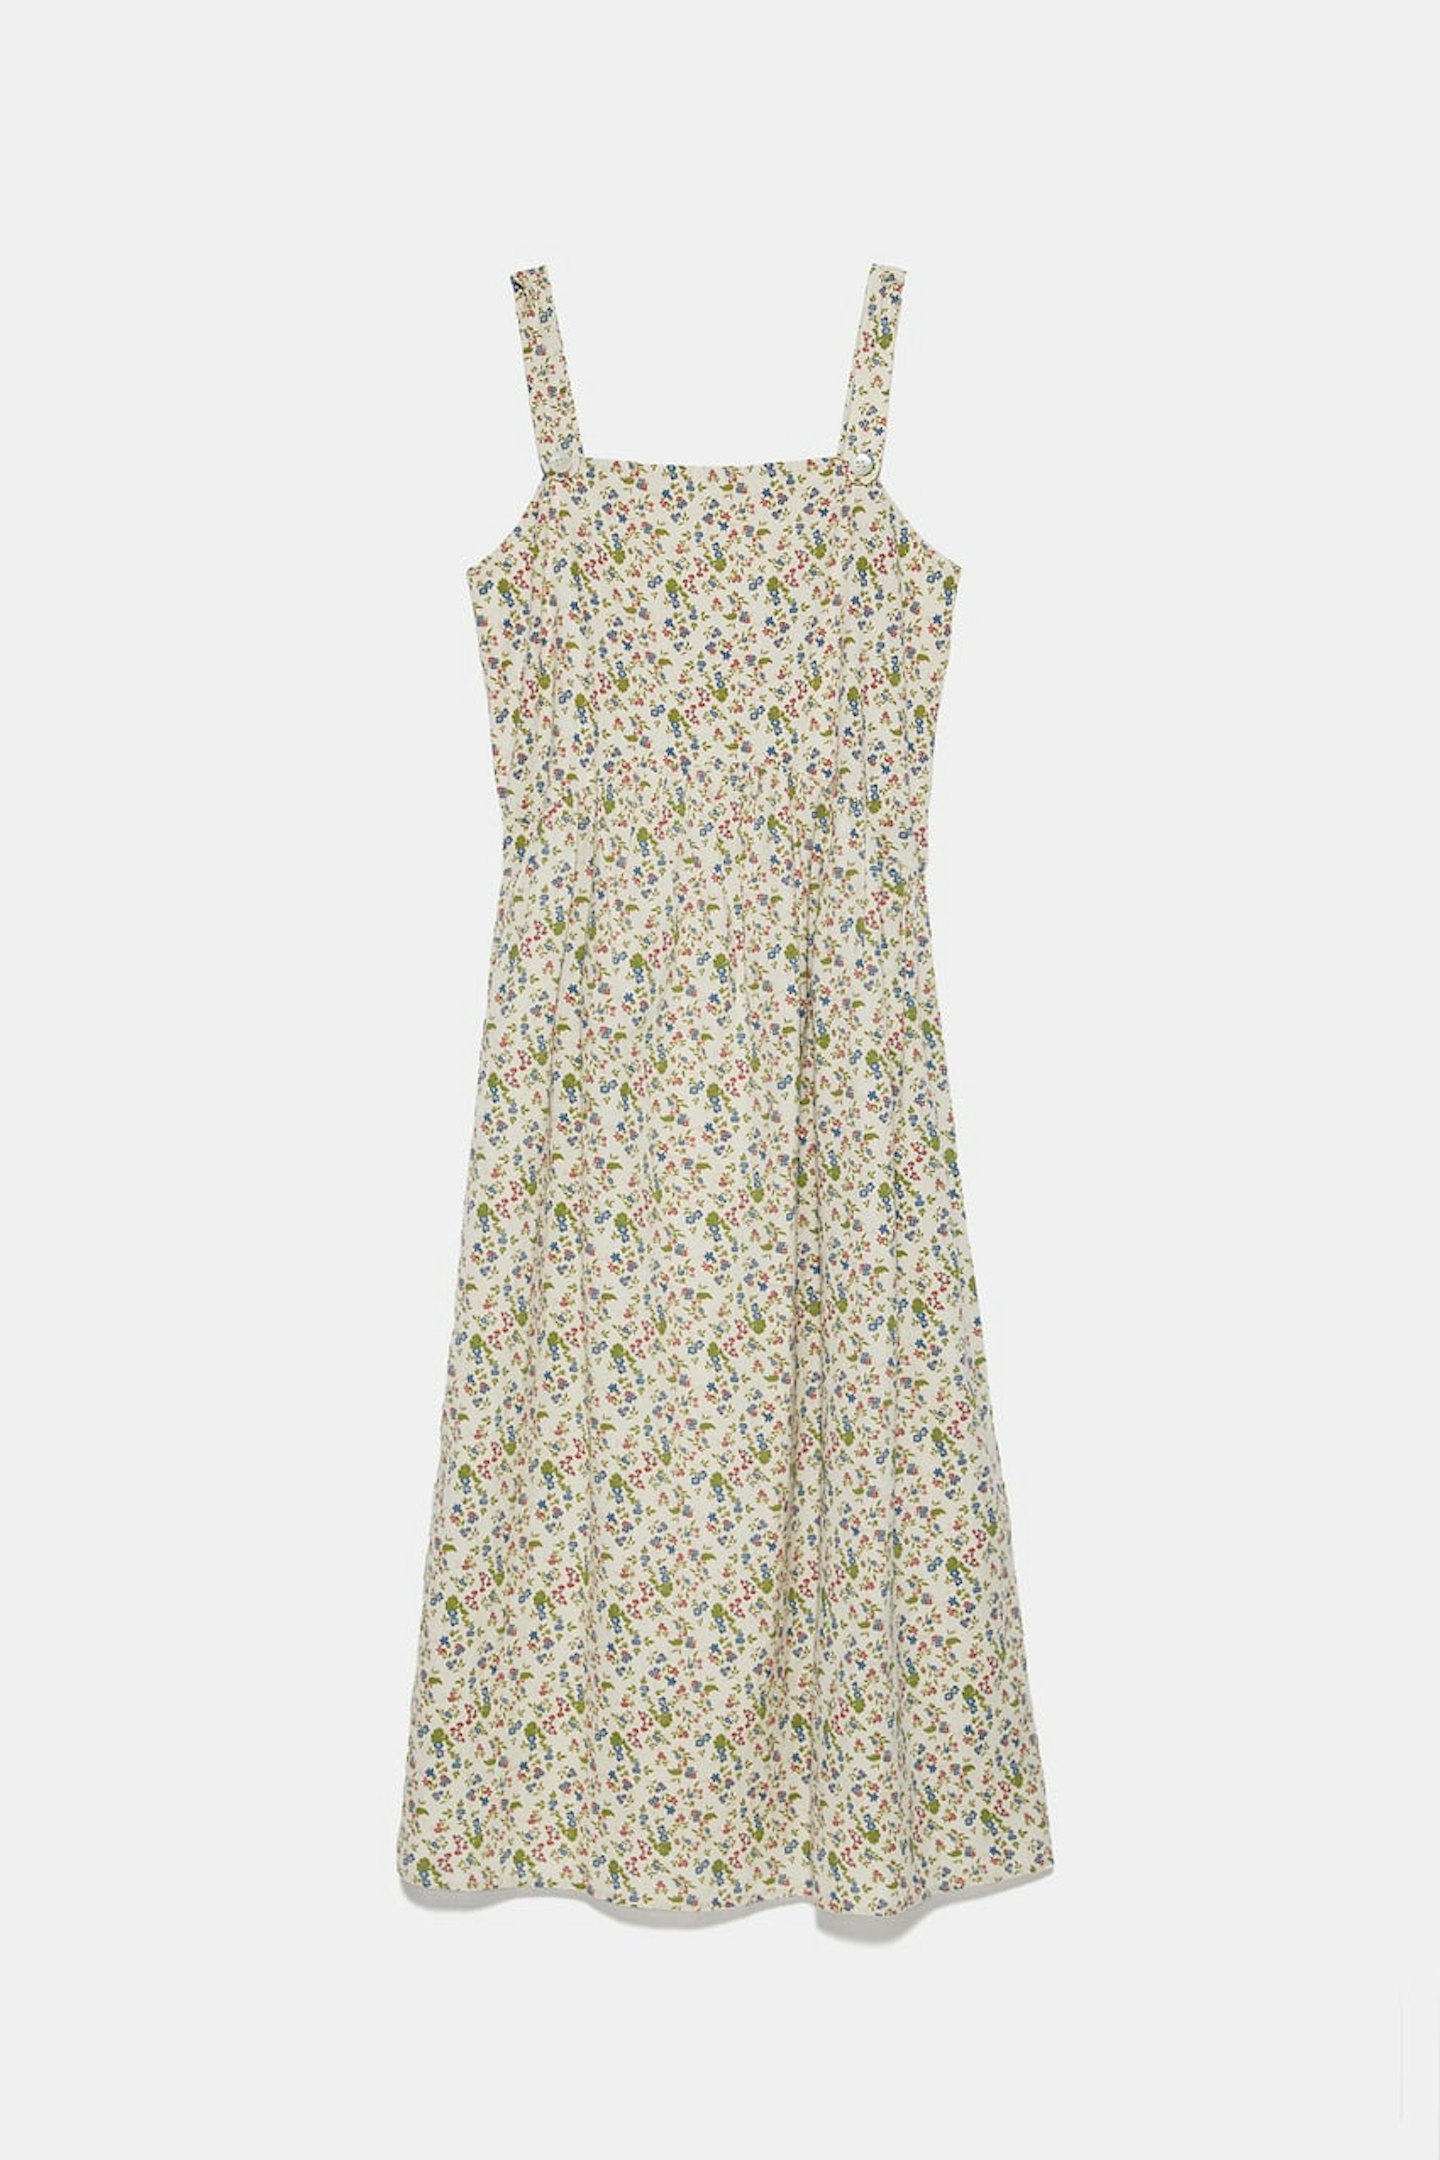 Zara, Printed Dress, £29.99